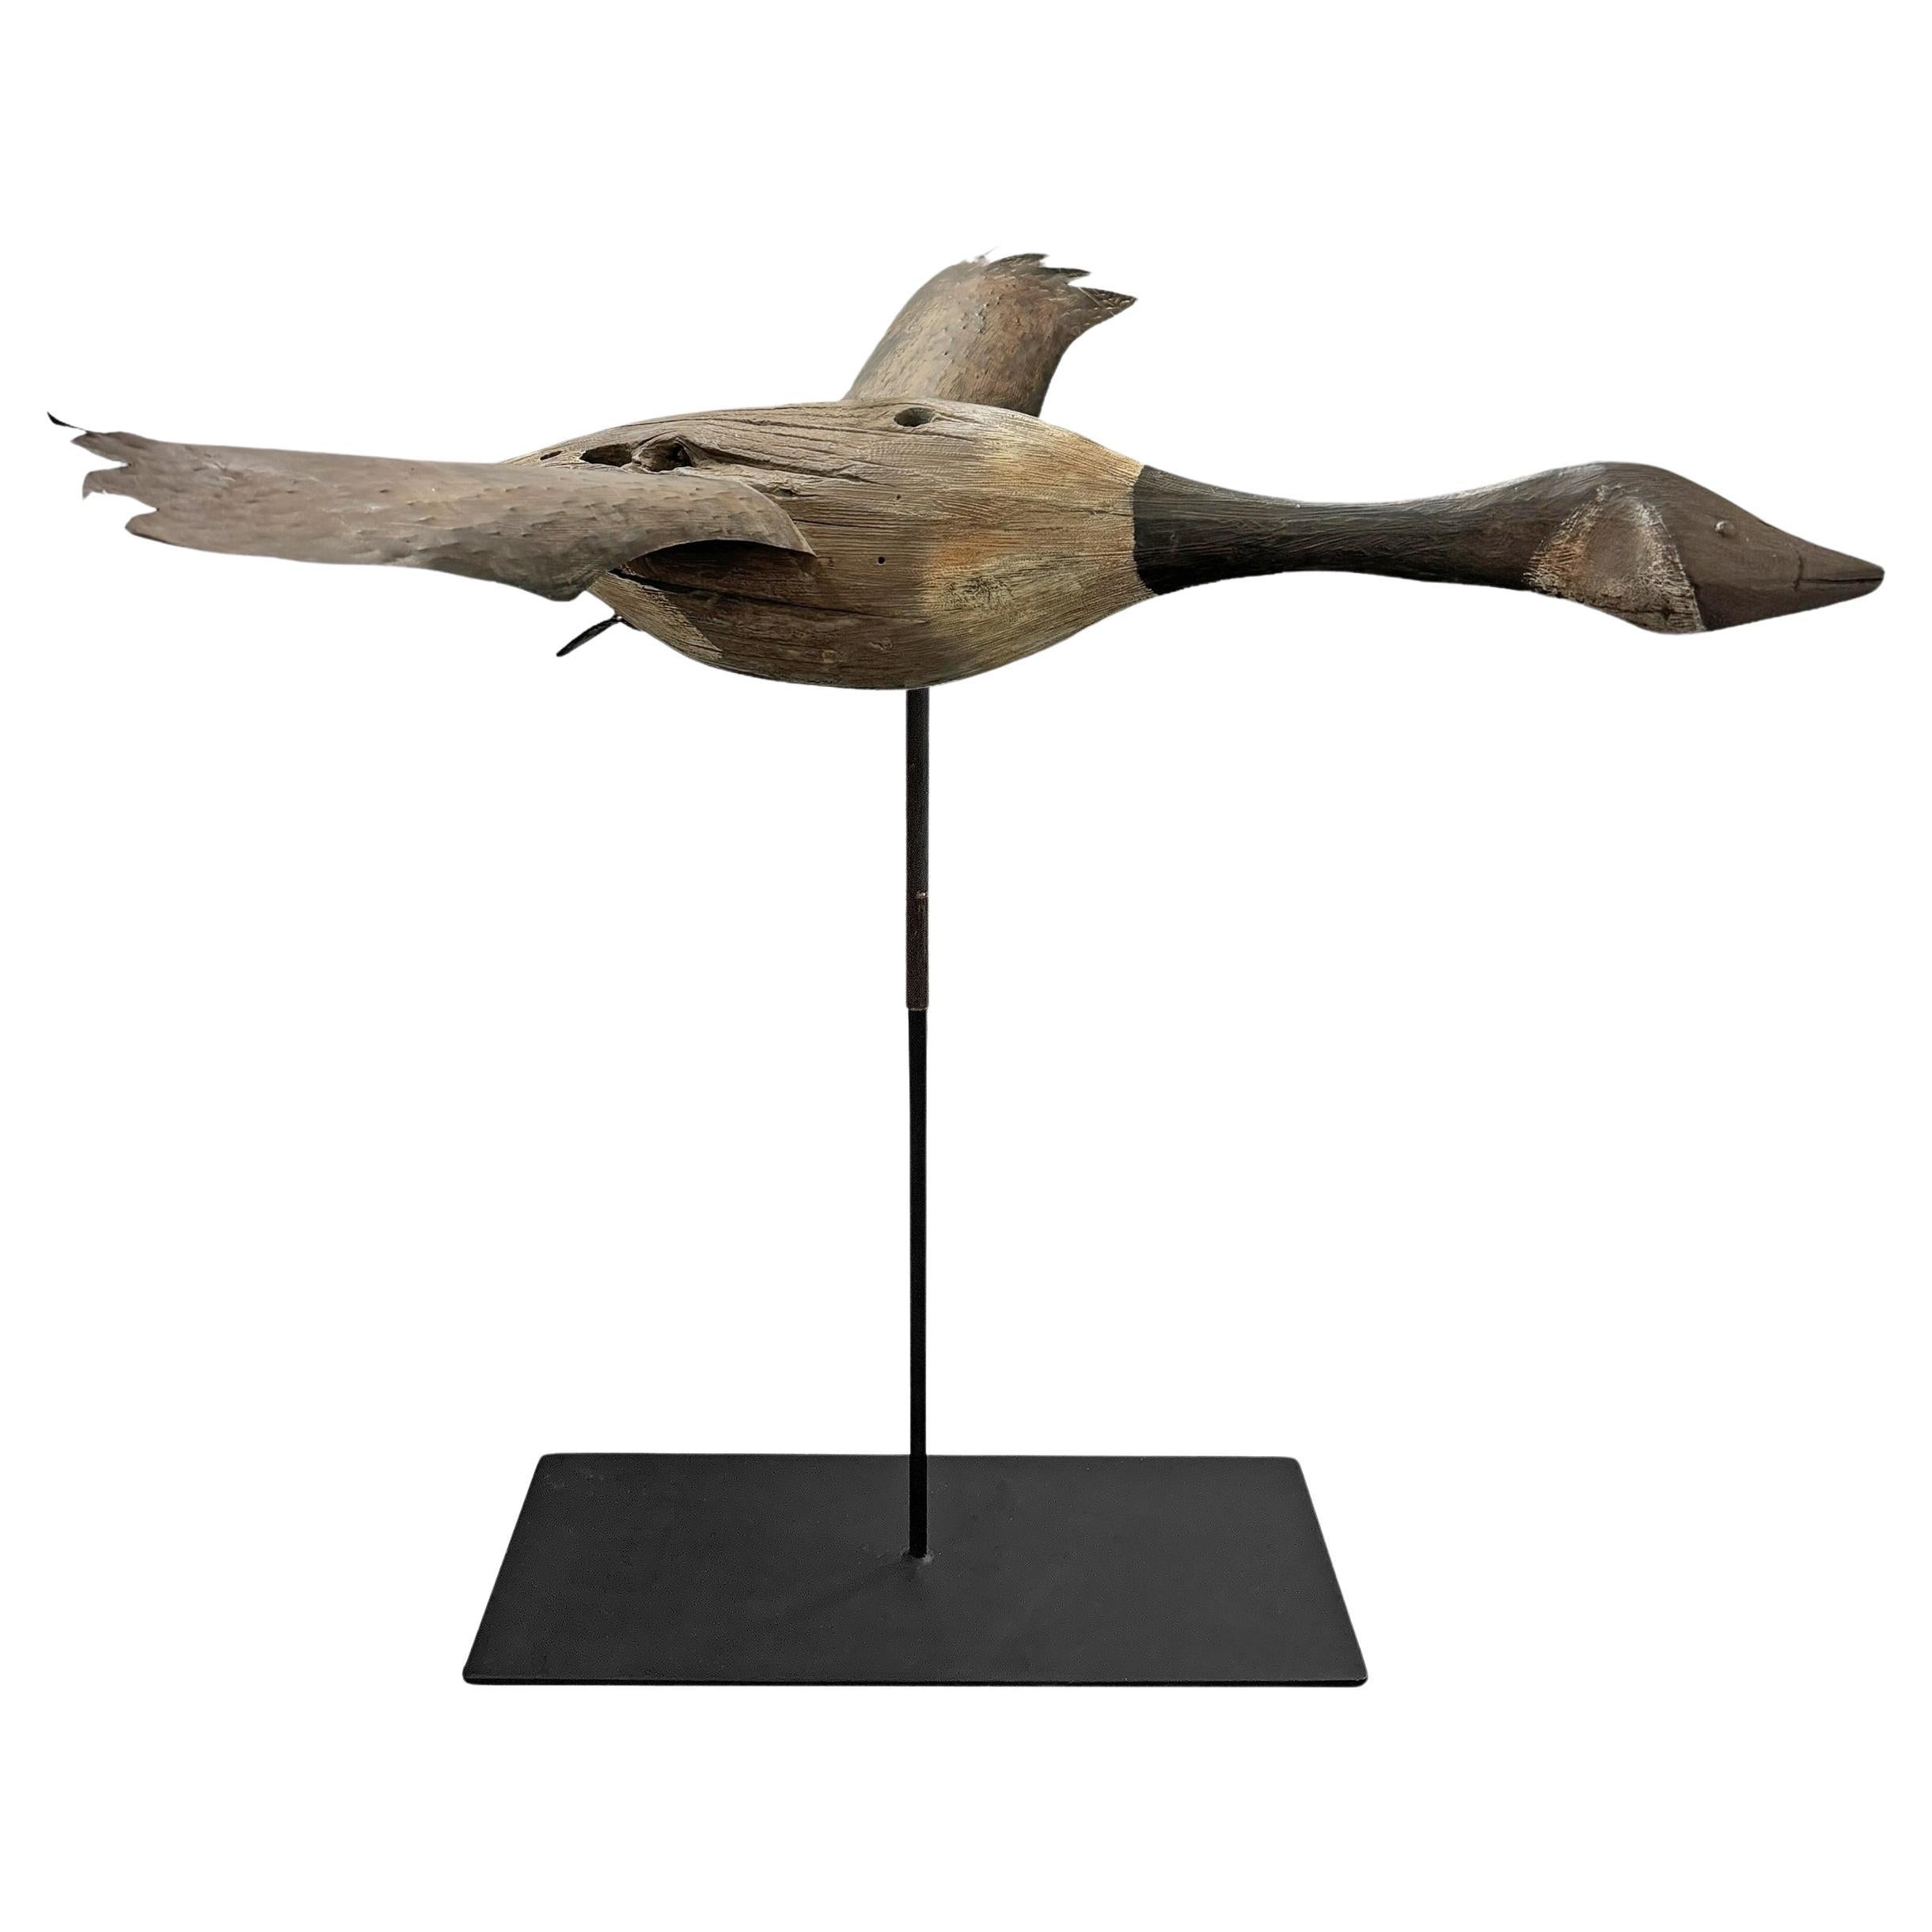 Art populaire américain du 20e siècle Canada Goose sur monture en acier personnalisée